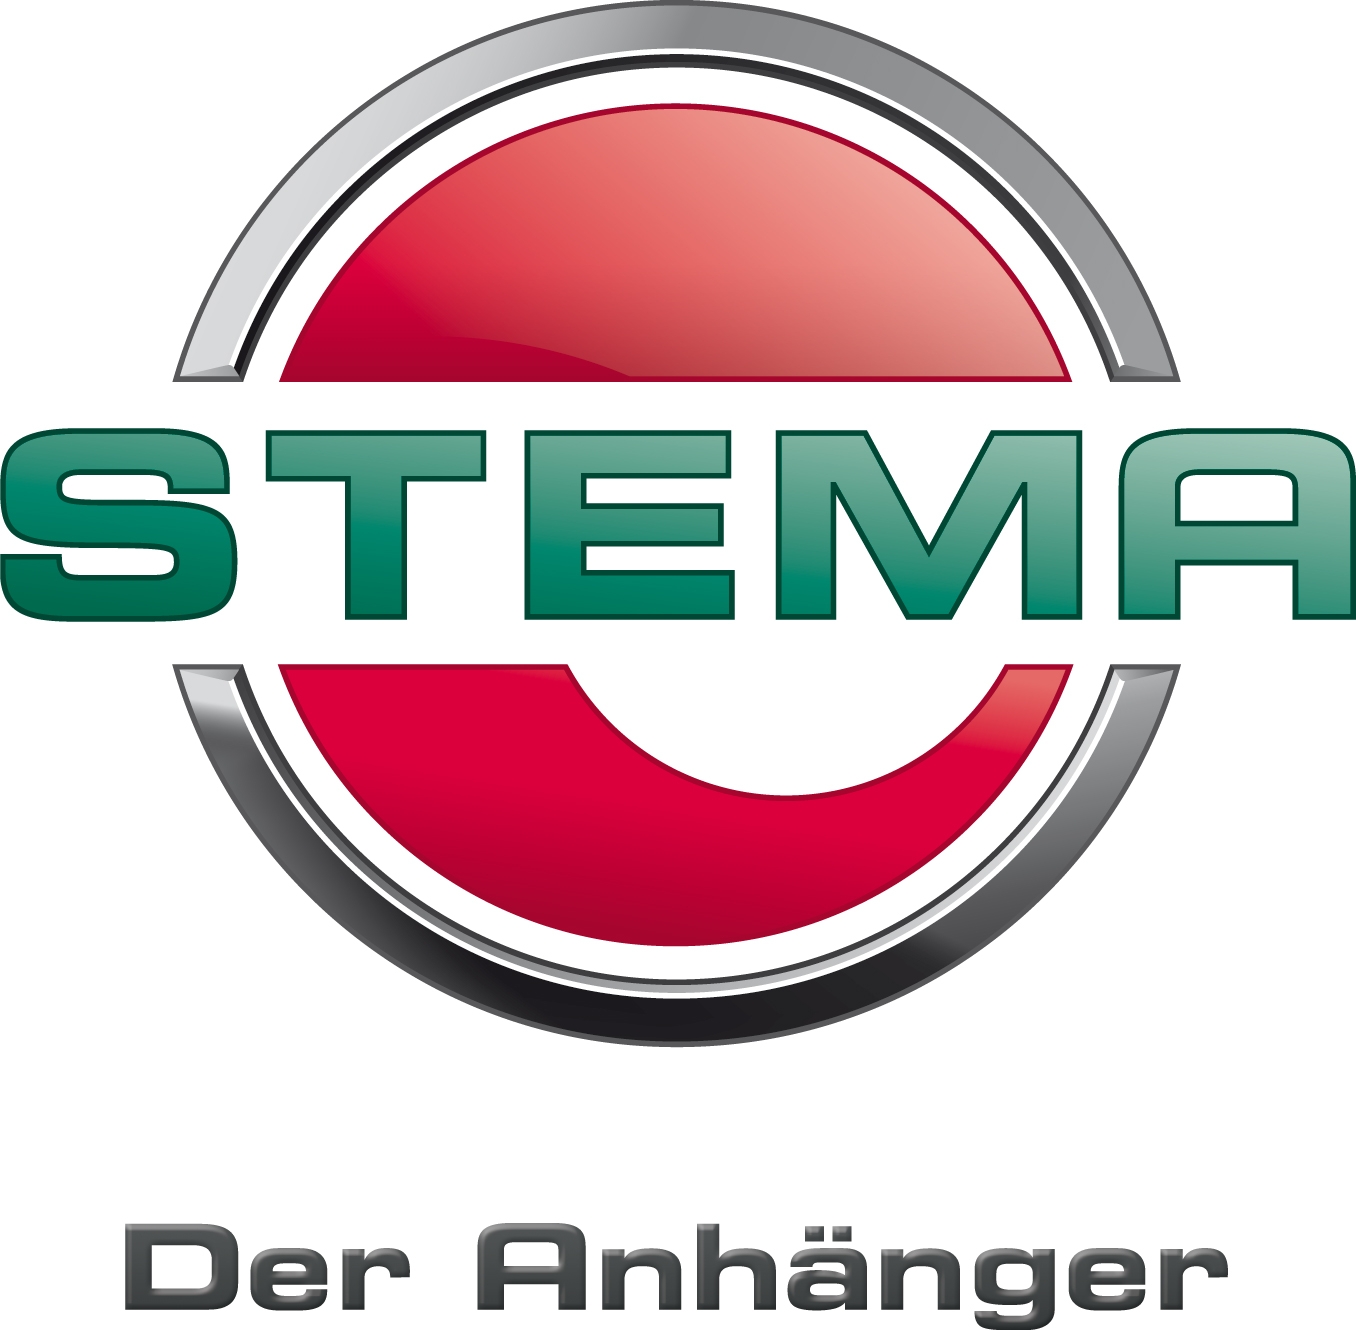 STEMA Anhängerbau Logo mit Link zurStema Anhänger Homepage